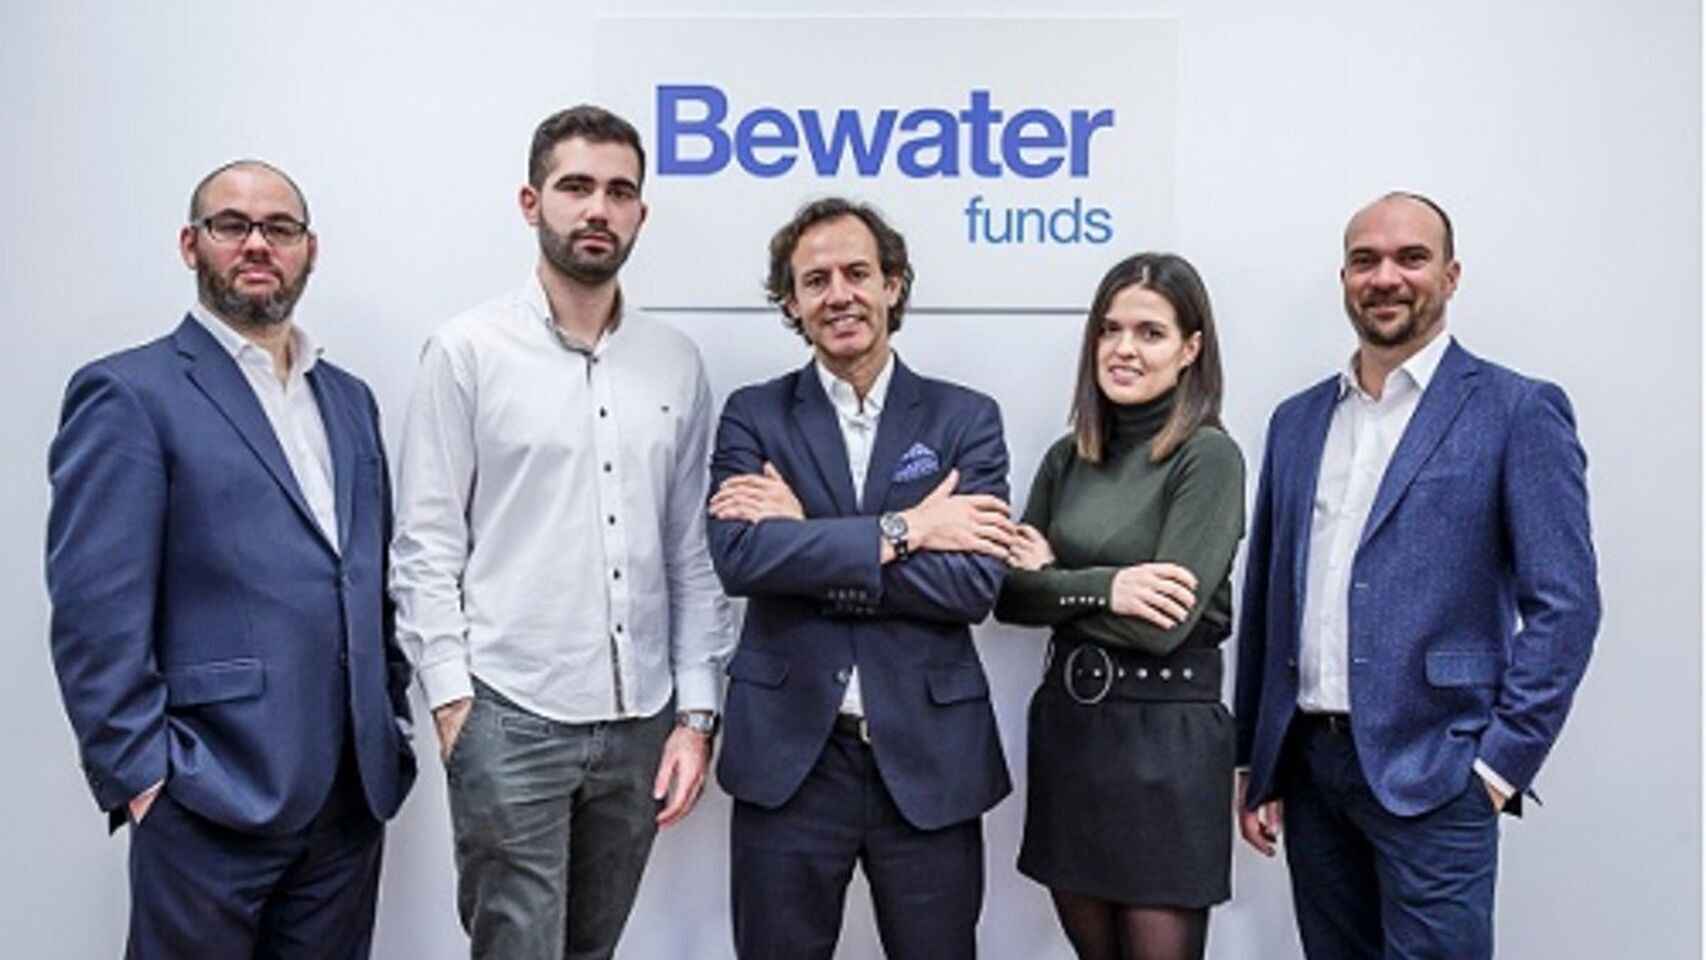 Ramón blanco, en el centro de la imagen, junto al equipo de Bewater Funds.